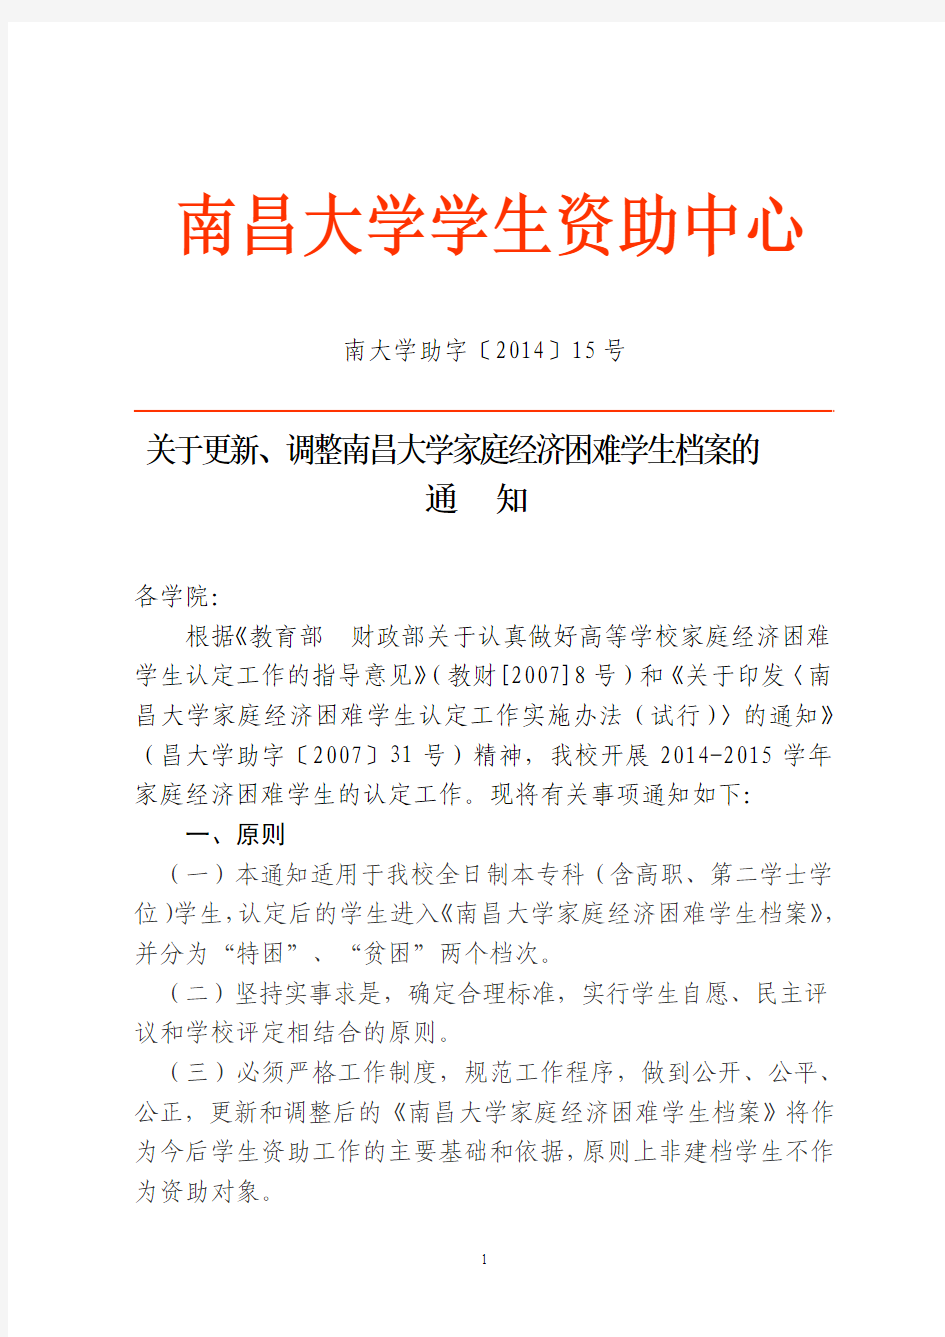 关于更新、调整南昌大学家庭经济困难学生档案的标准